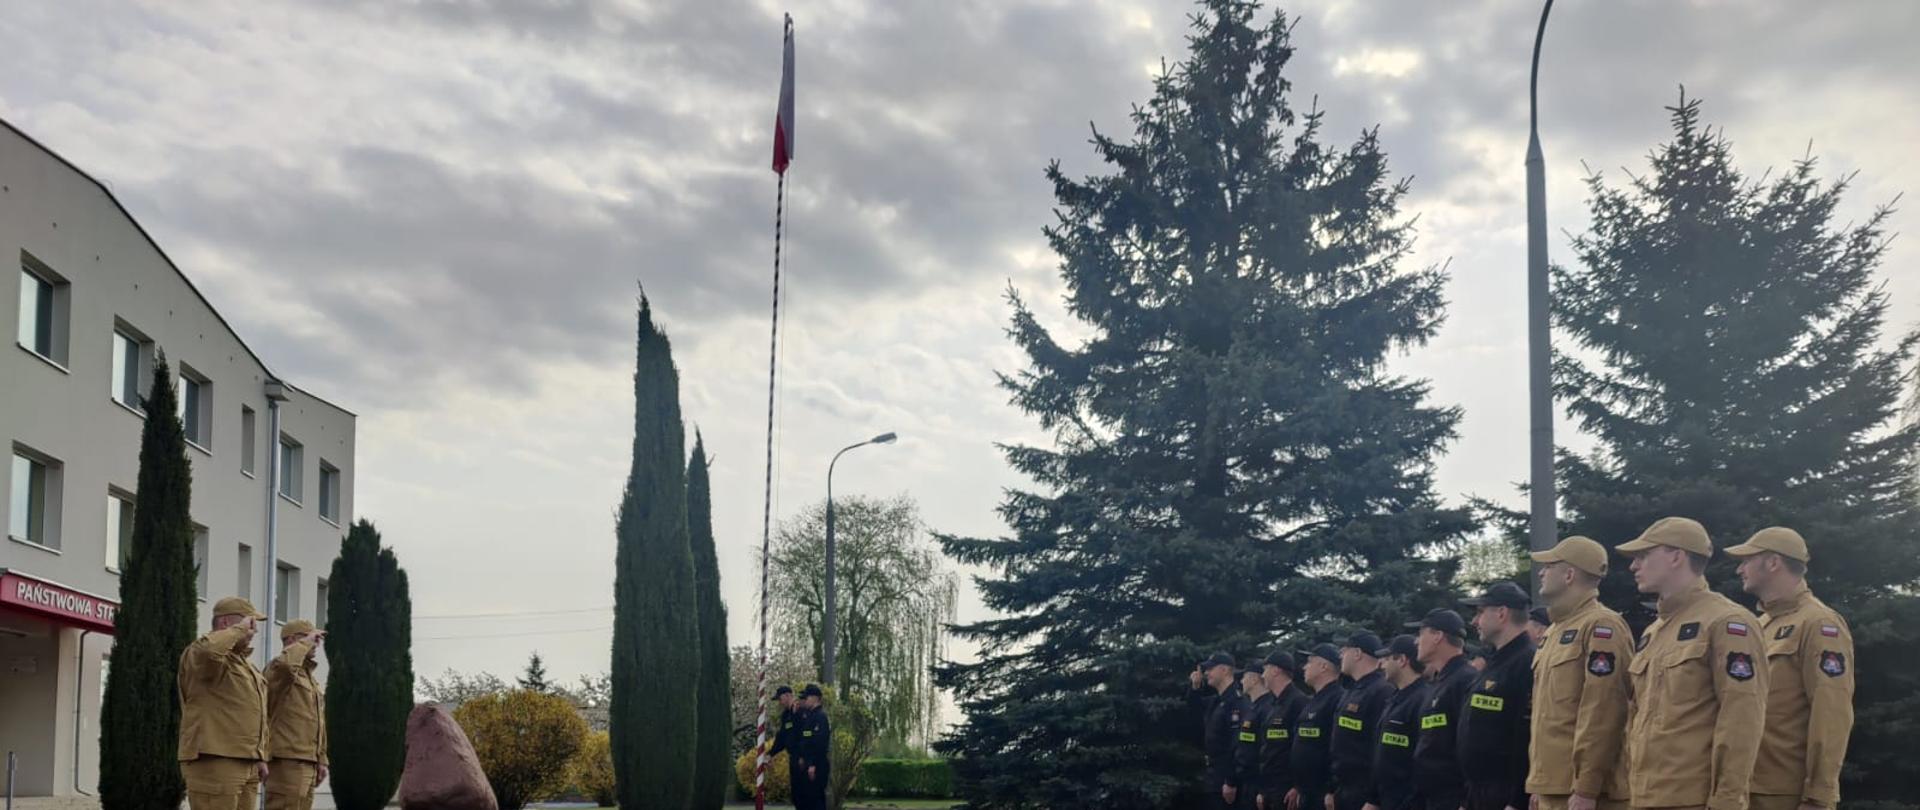 Uroczysta zbiórka przed budynkiem Komendy Powiatowej PSP w Opocznie. Umundurowani strażacy oddają honory w kierunku flagi podniesionej na maszcie. Z lewej strony Komendanci, z prawej kilkunastu funkcjonariuszy, w centralnej części przy maszcie poczet flagowy. 